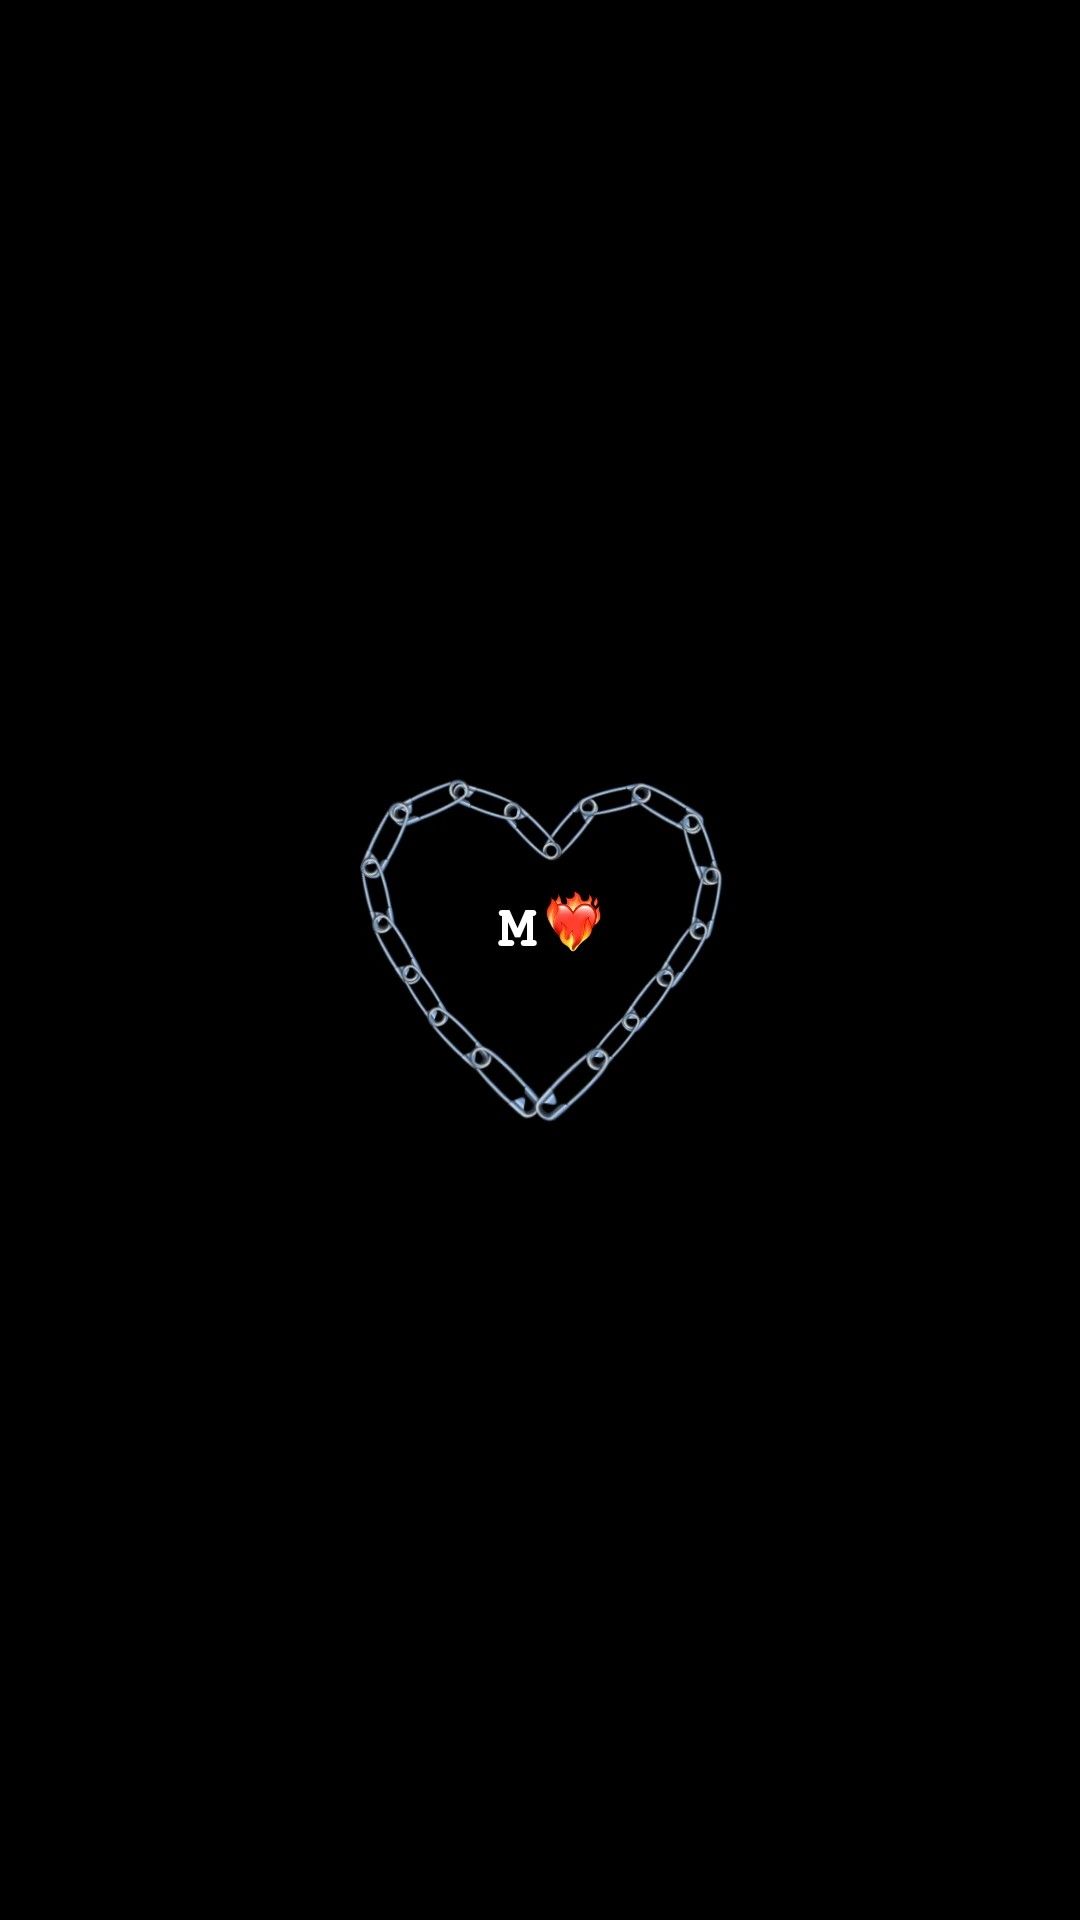 Ảnh trái tim đỏ - Trái tim đỏ là biểu tượng của tình yêu, sự đam mê và tình cảm chân thành. Trong bộ sưu tập hình ảnh này, bạn sẽ tìm thấy những hình ảnh về trái tim đỏ rất đặc biệt, đầy cảm hứng và tình yêu. Cùng chiêm ngưỡng để tìm cho mình một hình ảnh đẹp nhất về trái tim đỏ nhé!